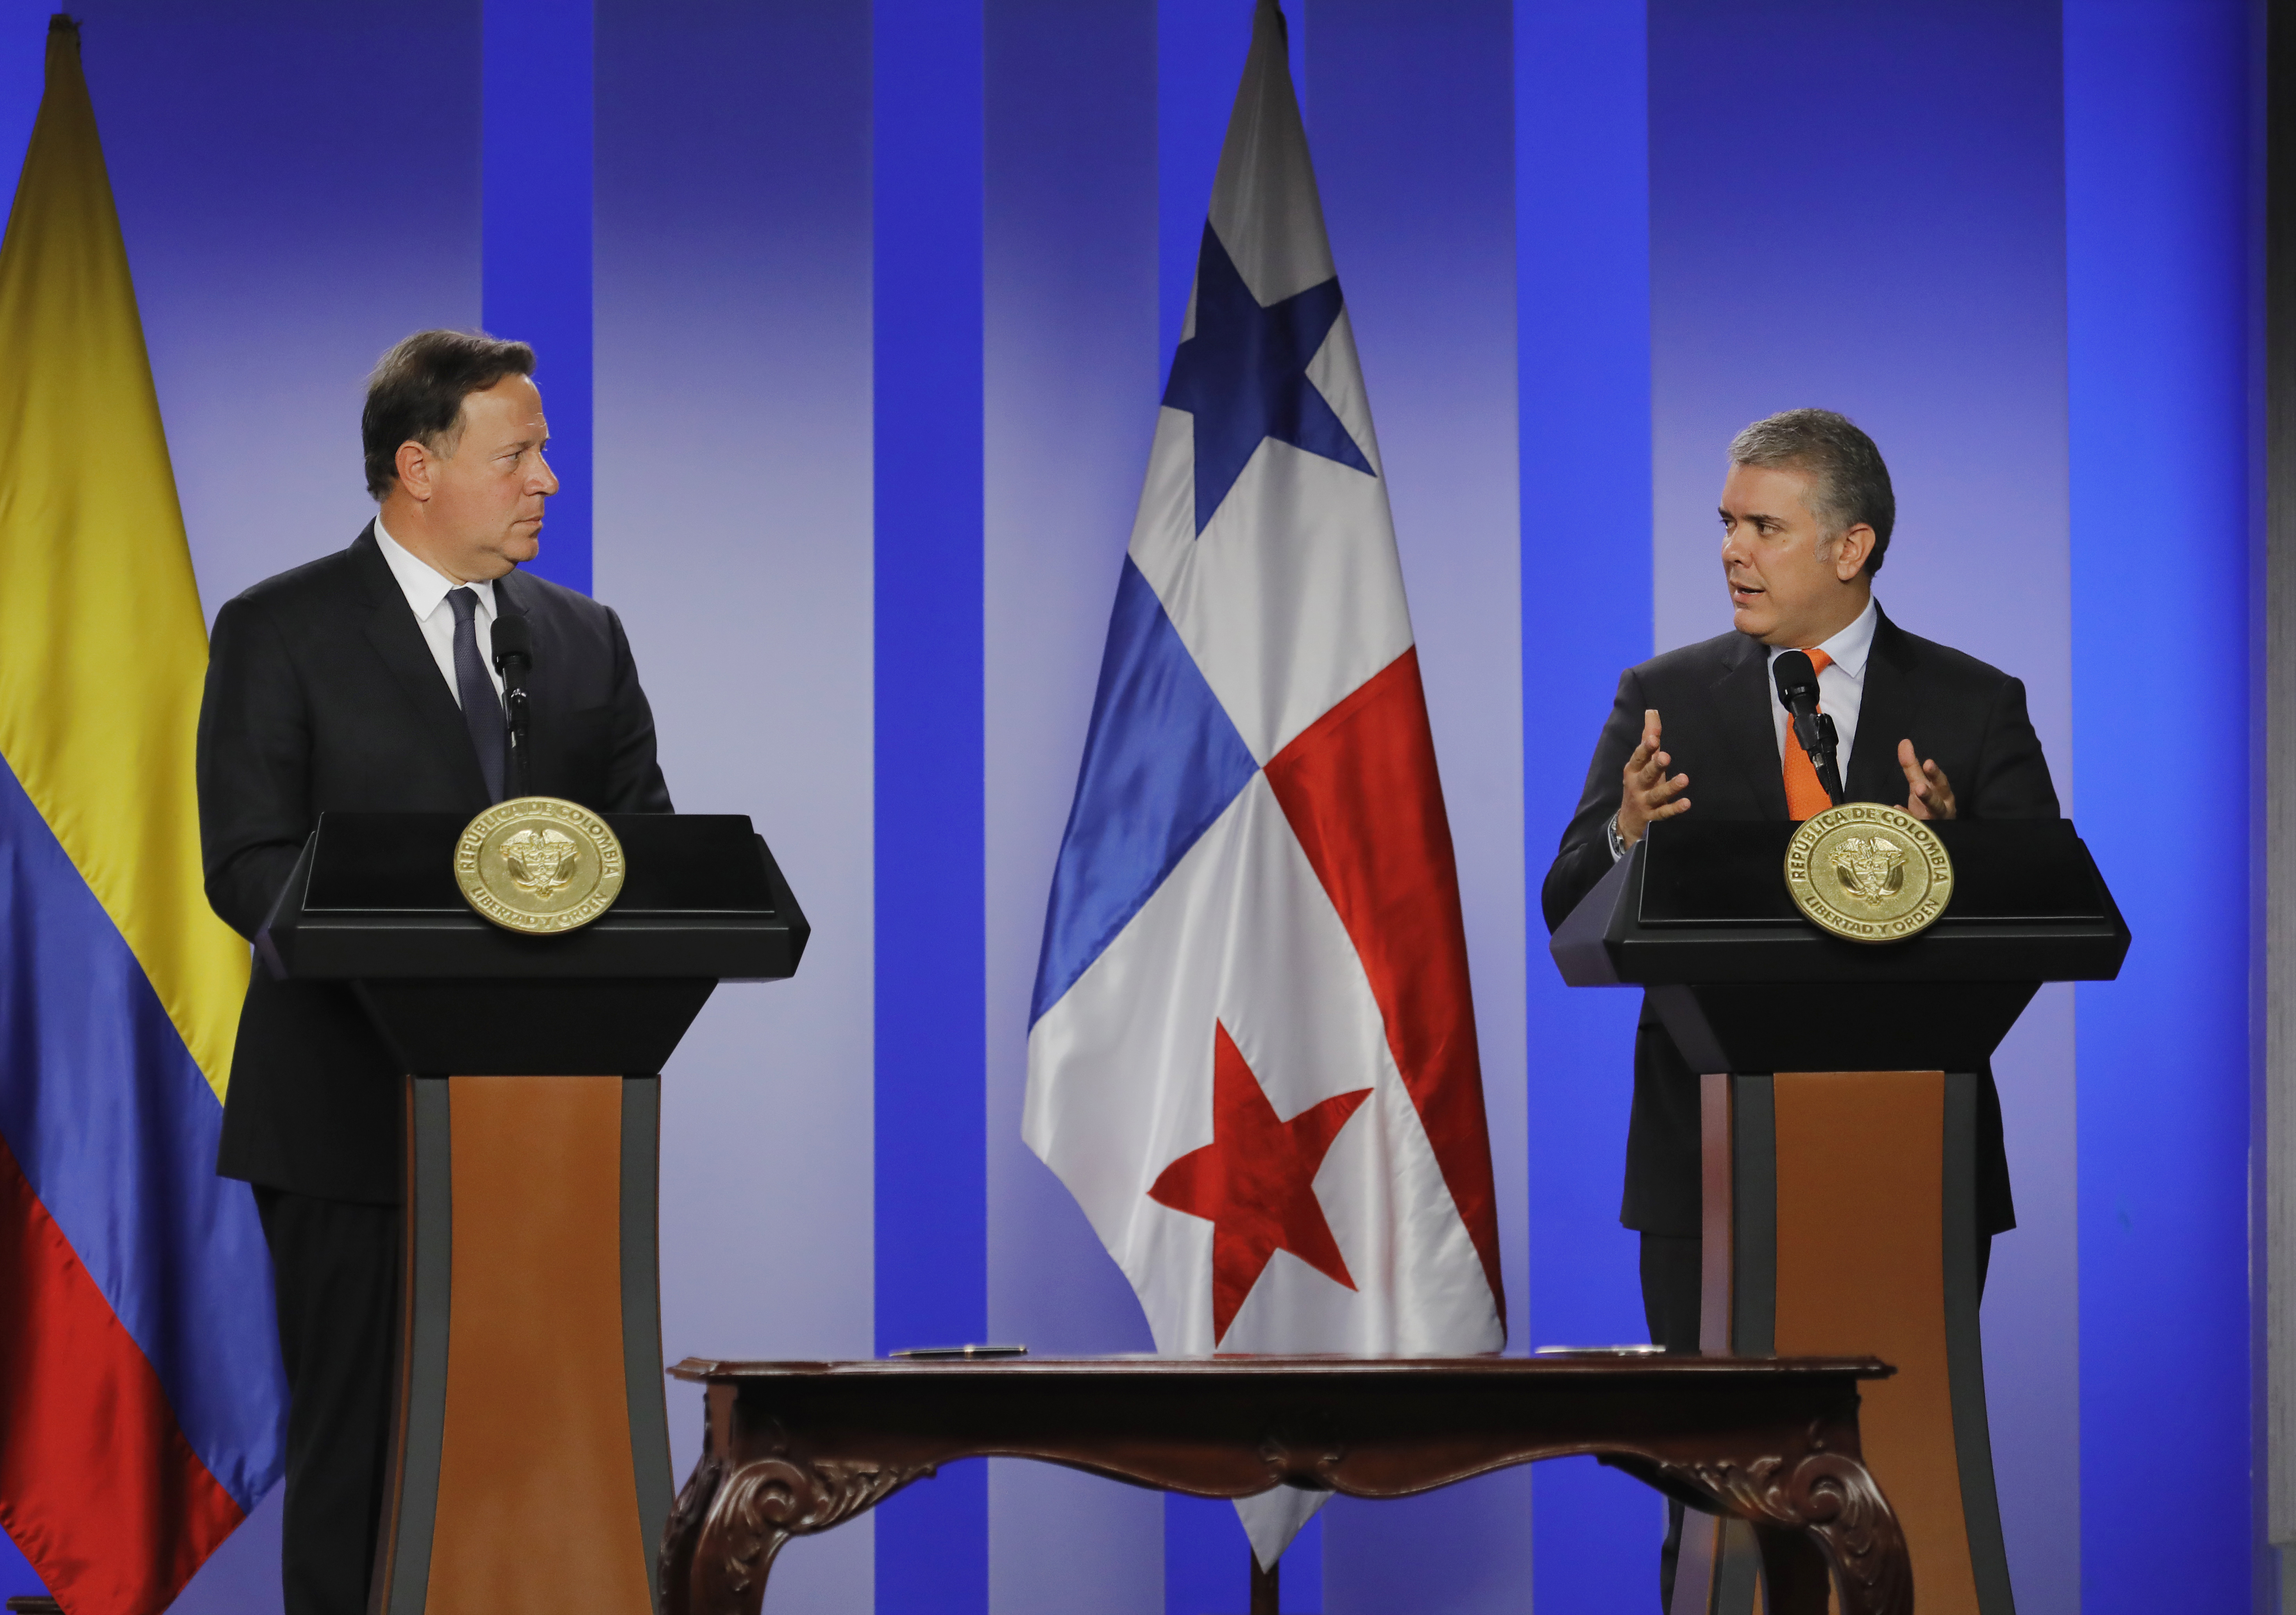 El Presidente Duque destacó que la visita del Jefe de Estado de Panamá es muestra de la hermandad y fortaleza de las relaciones entre ambos países: “Colombia siempre será su casa”